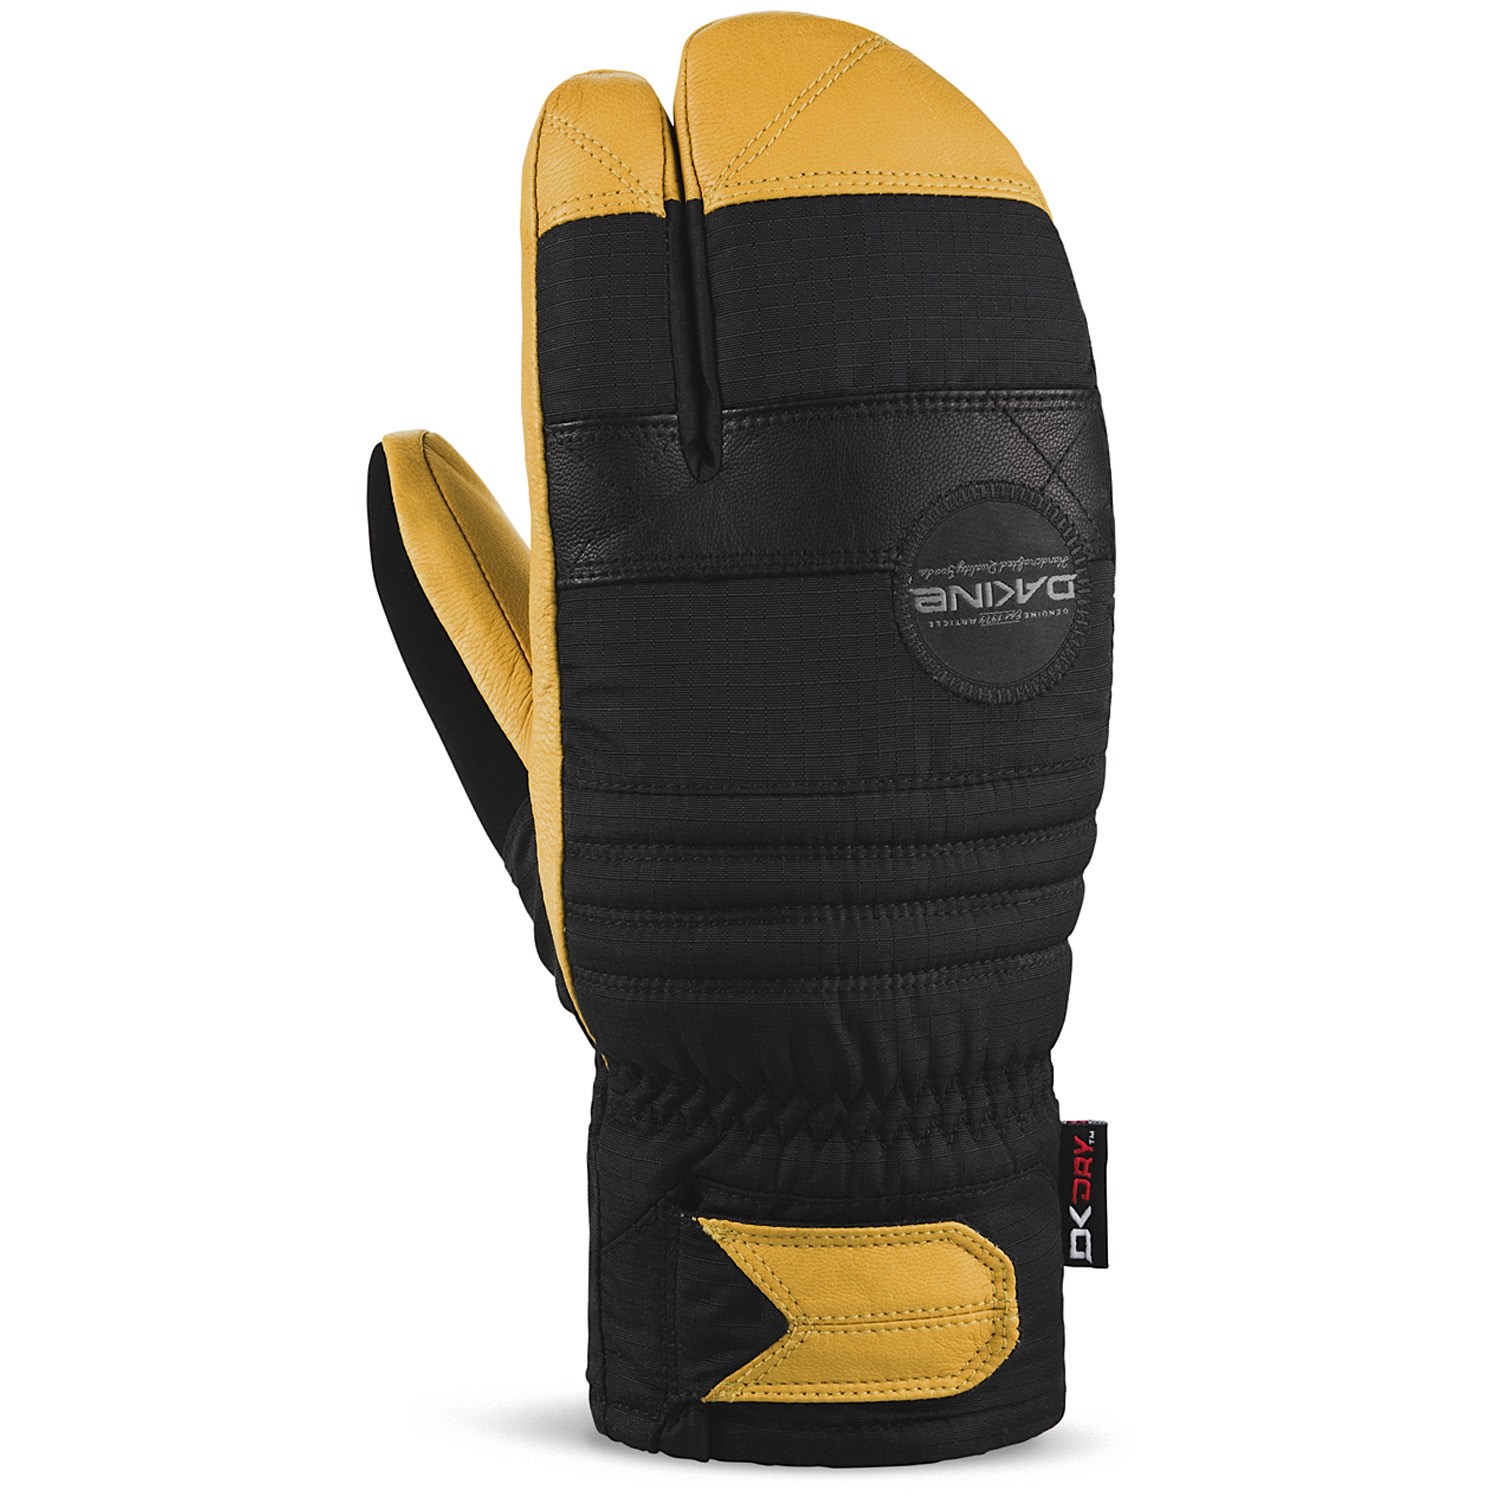 trigger finger snowboard gloves